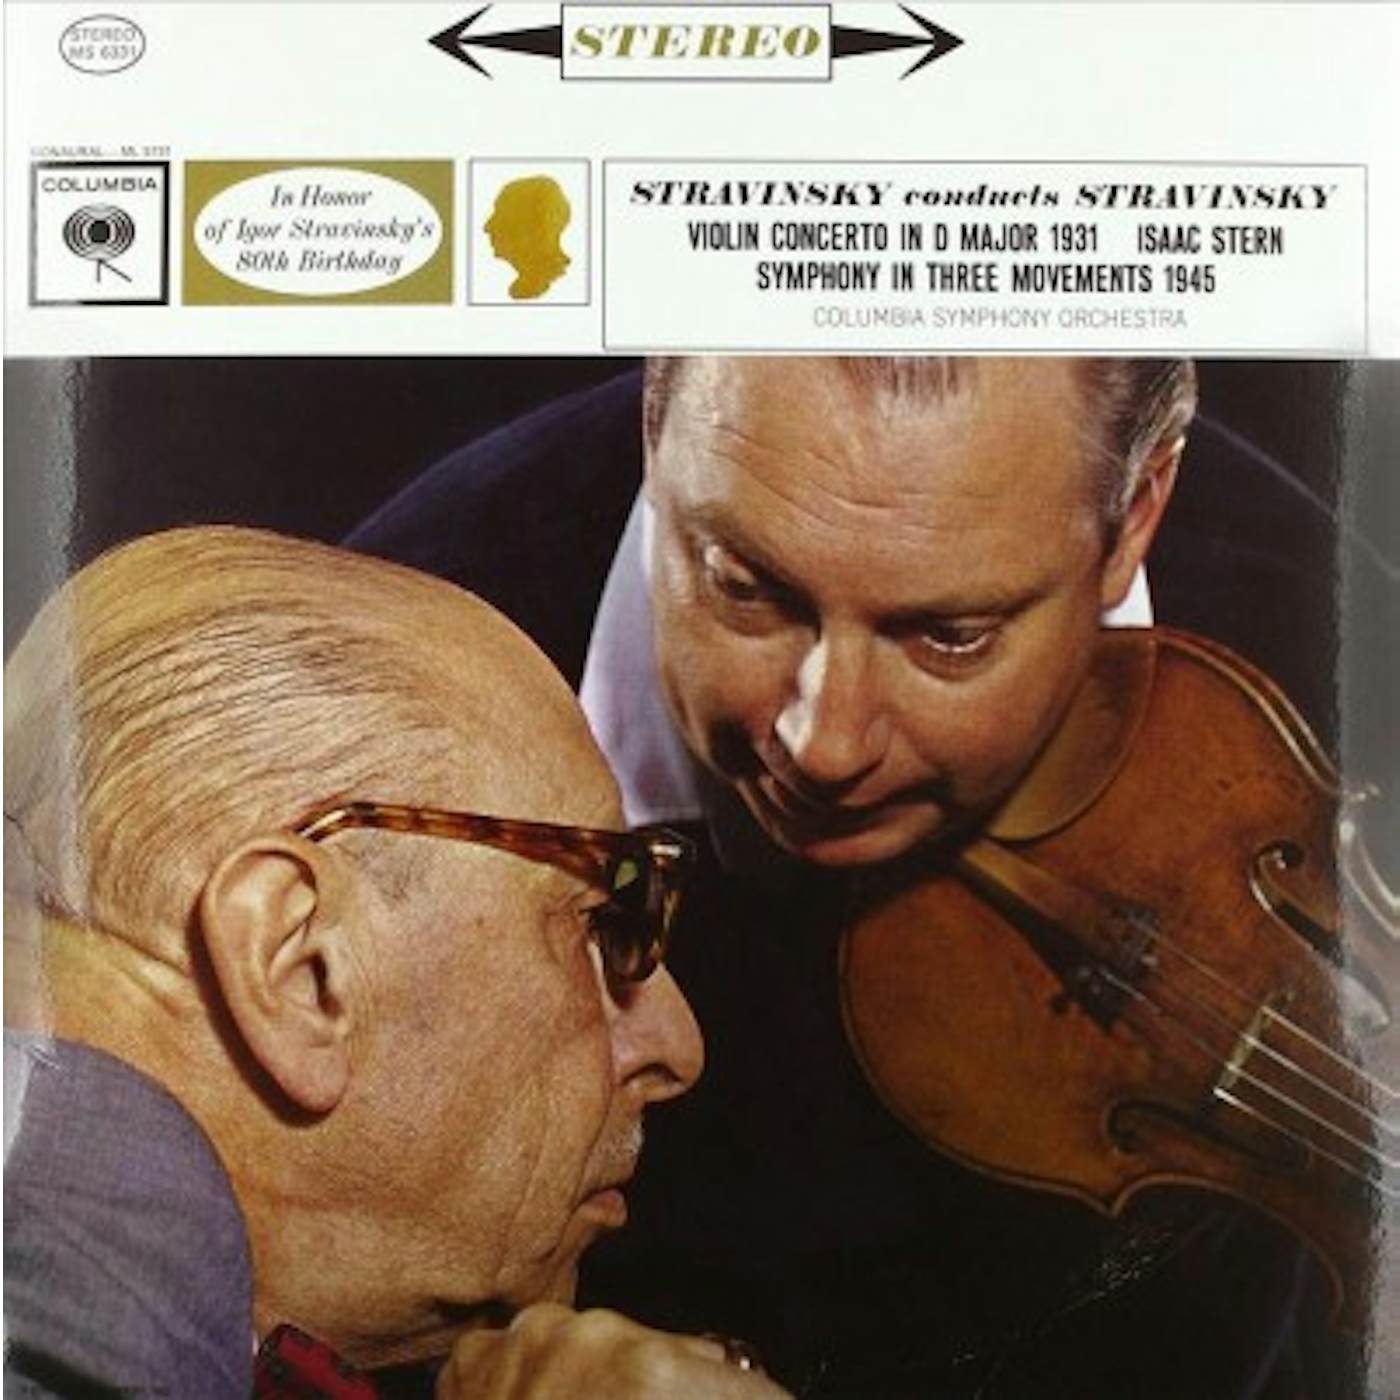 Igor Stravinsky Conducts Stravinksy Vinyl Record